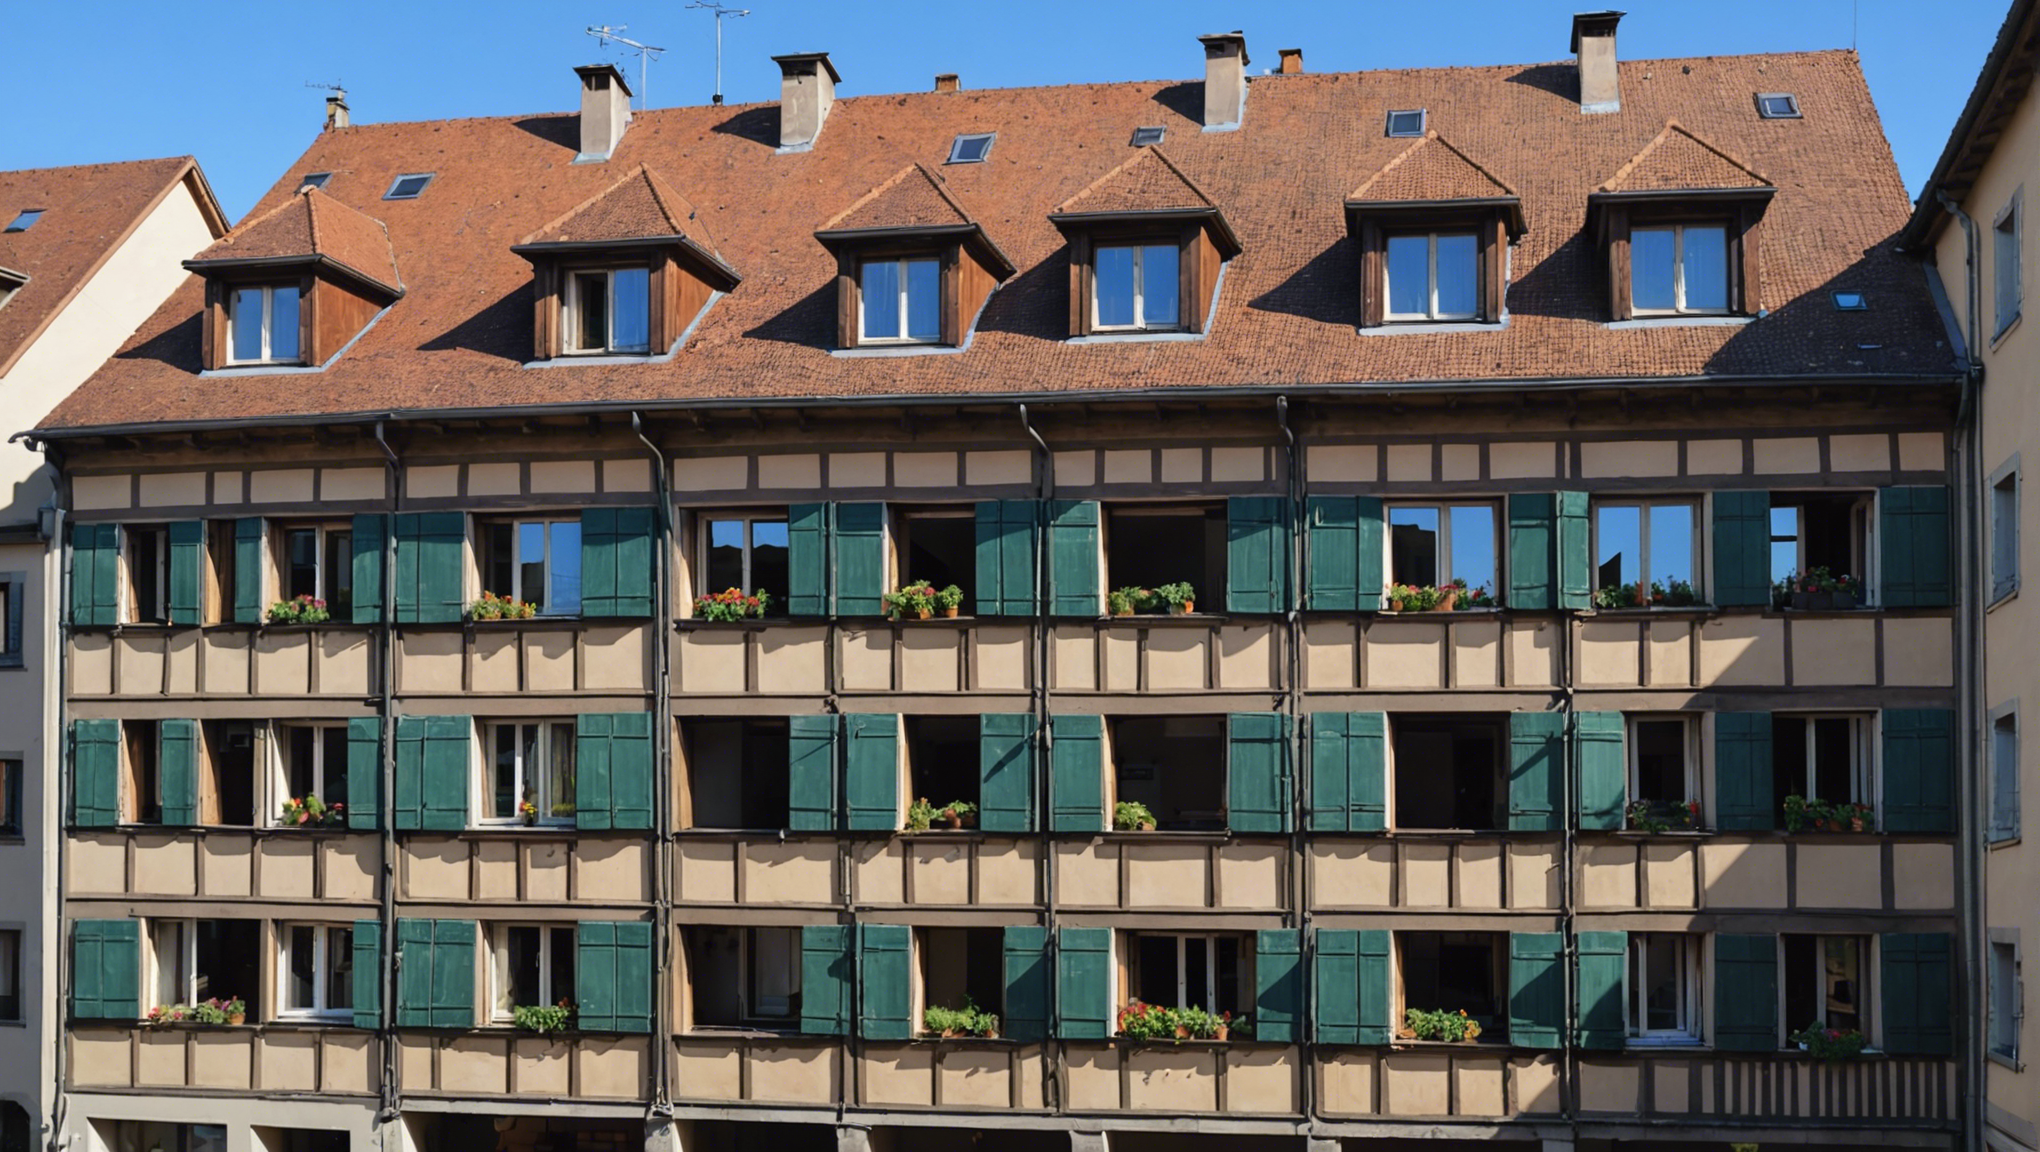 trouvez un devis pour la rénovation de votre toiture à strasbourg en contactant des professionnels du bâtiment qualifiés et expérimentés. obtenez un diagnostic précis et des conseils personnalisés pour vos travaux de toiture.